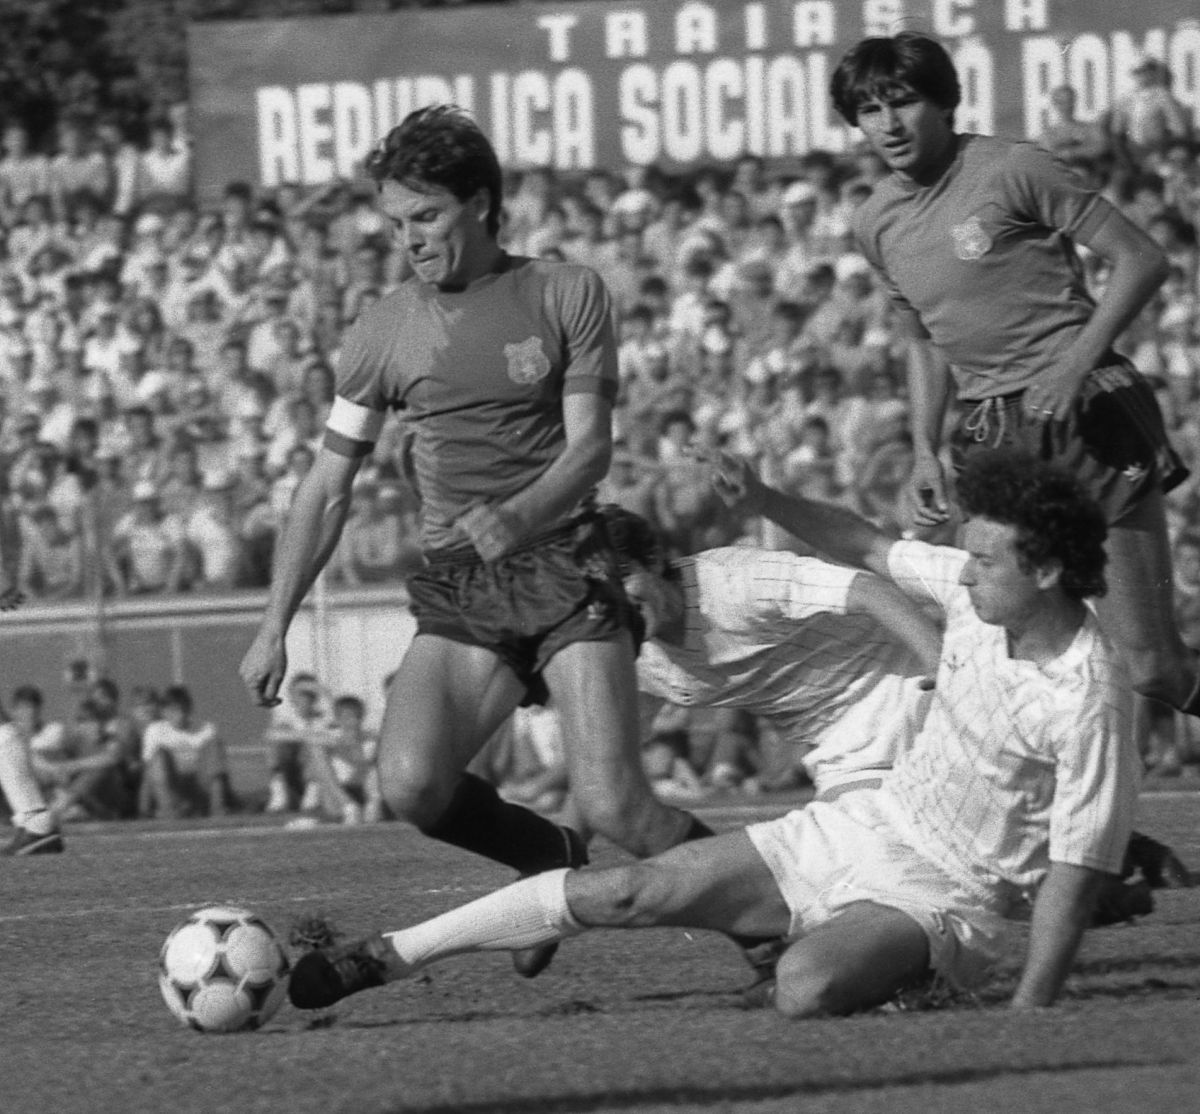 Imagini de colecție de la derby-urile Steaua - Dinamo din anii '80